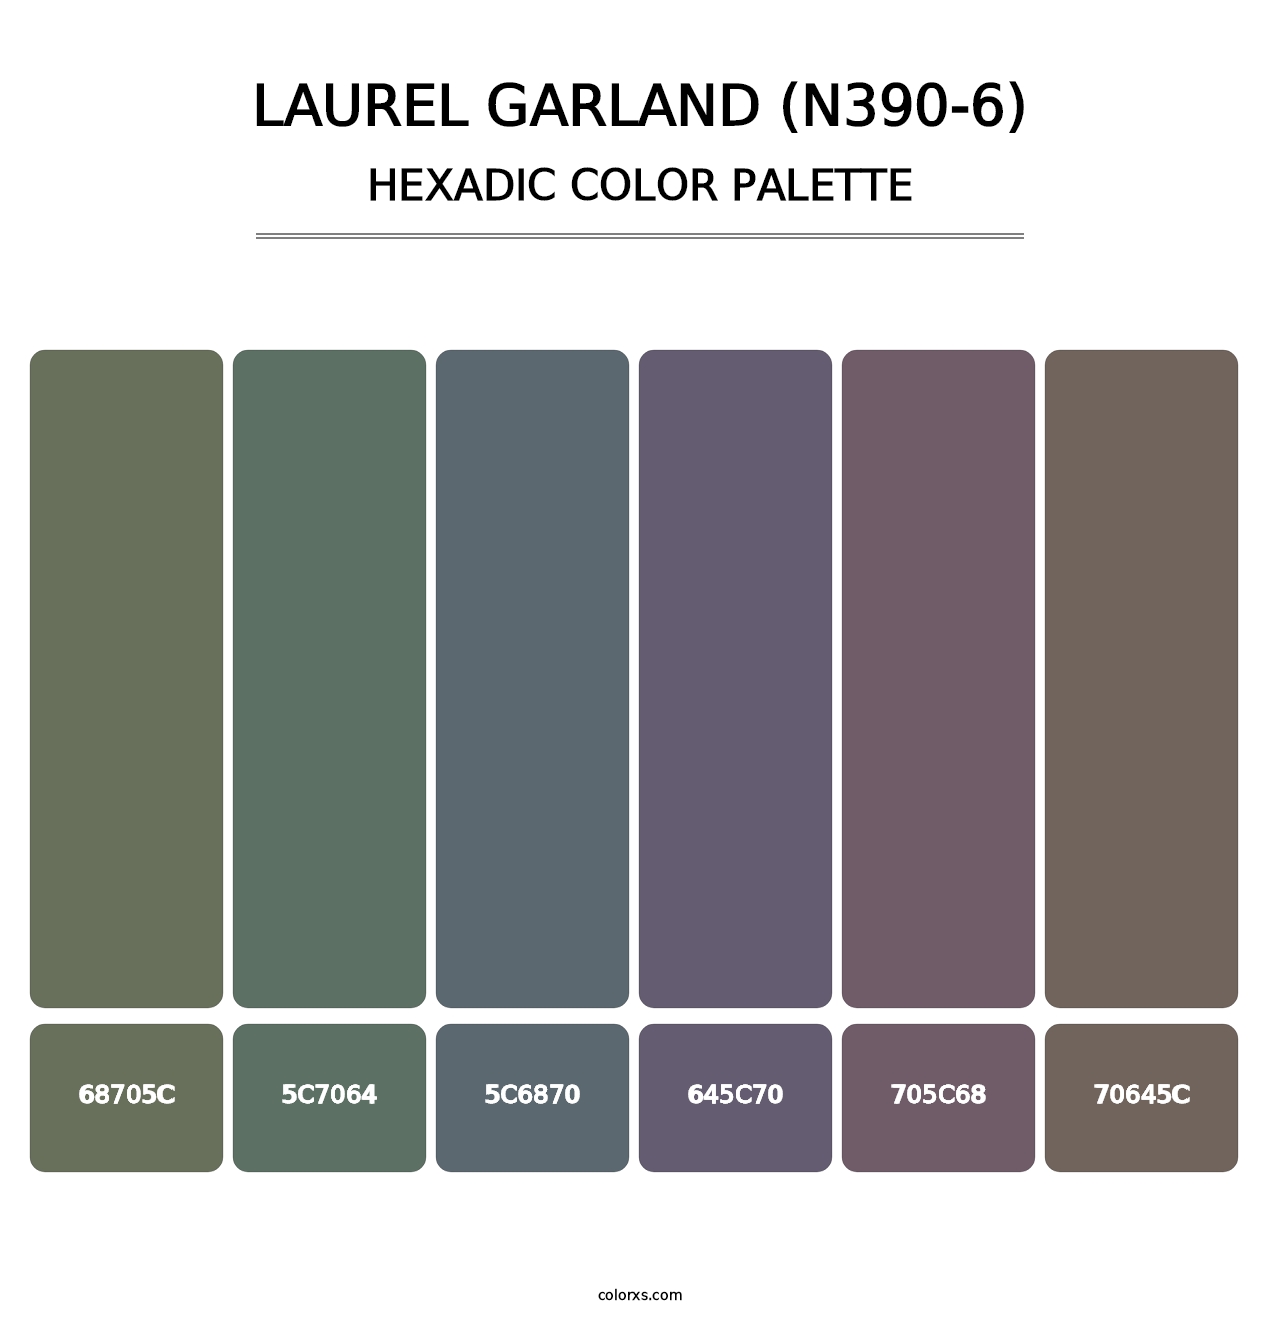 Laurel Garland (N390-6) - Hexadic Color Palette